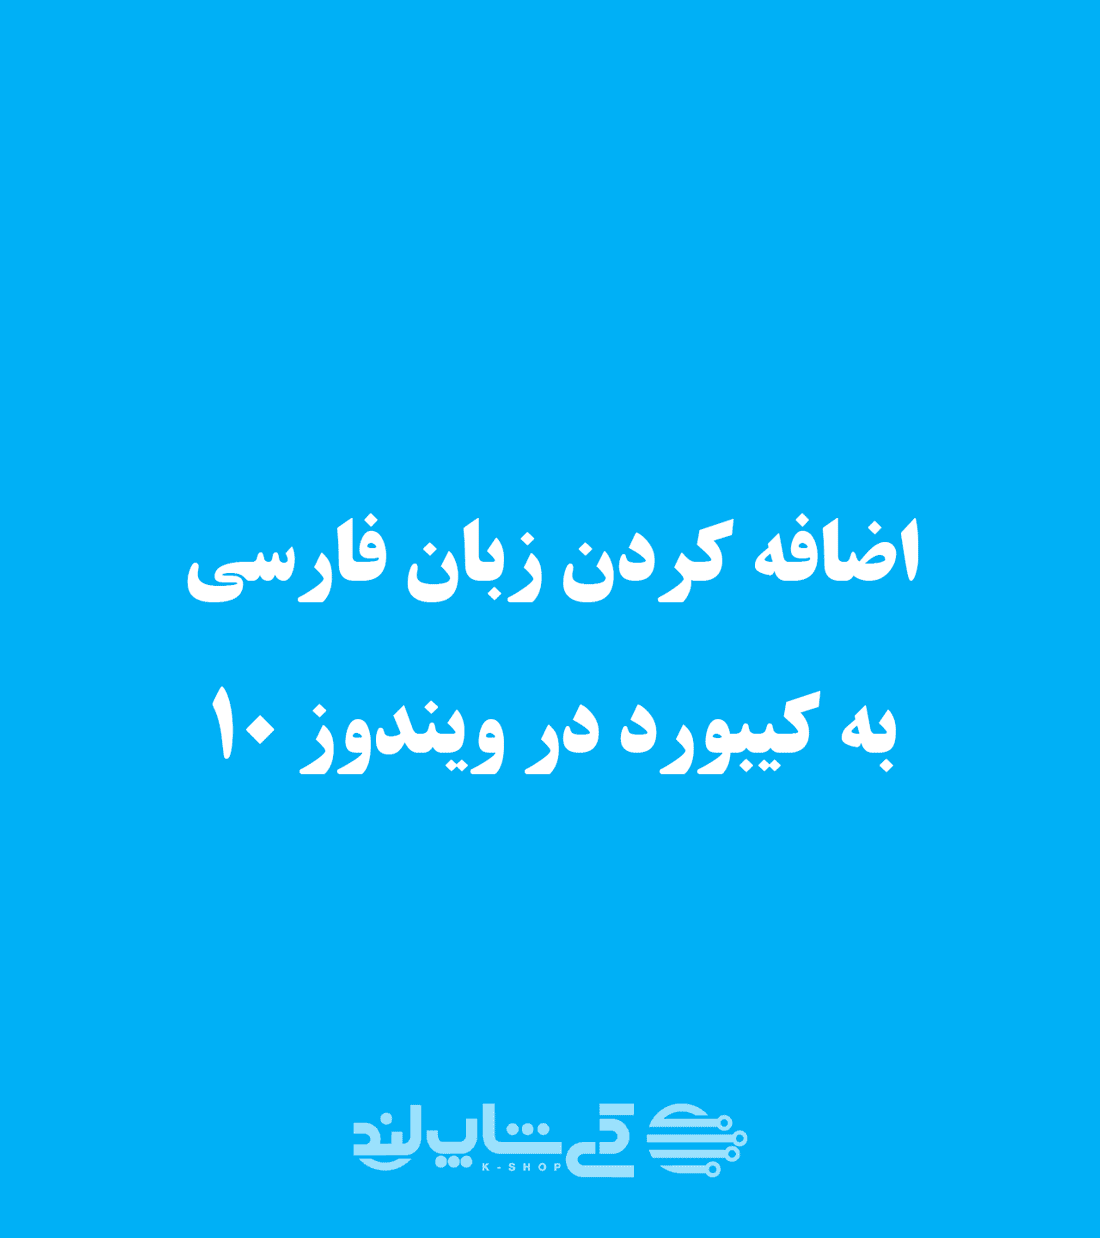 یک گیف (تصویر متحرک) برای نمایش مراحل فارسی کردن کیبورد در ویندوز 10 به زبان فارسی